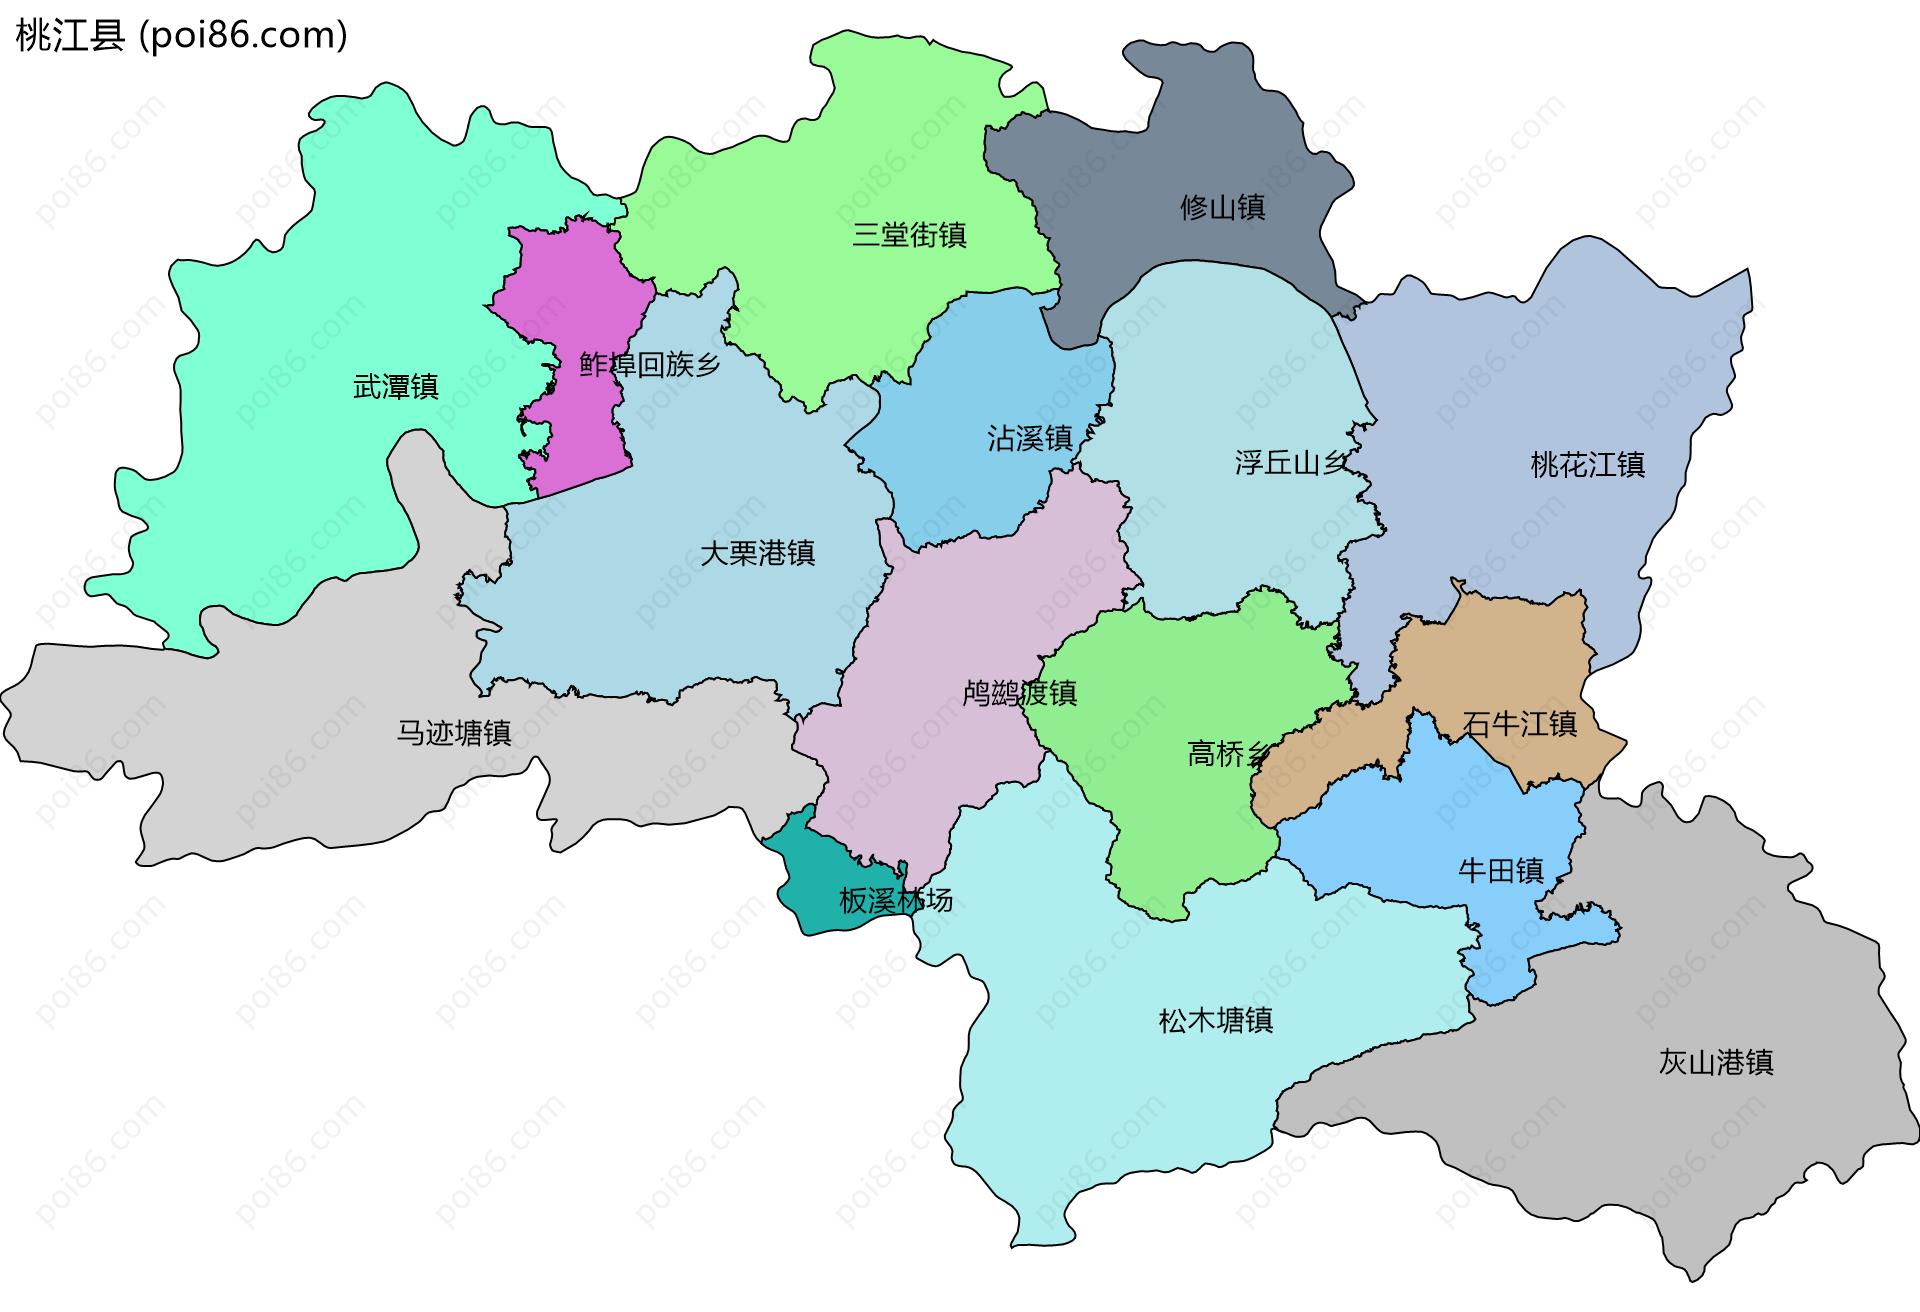 桃江县边界地图